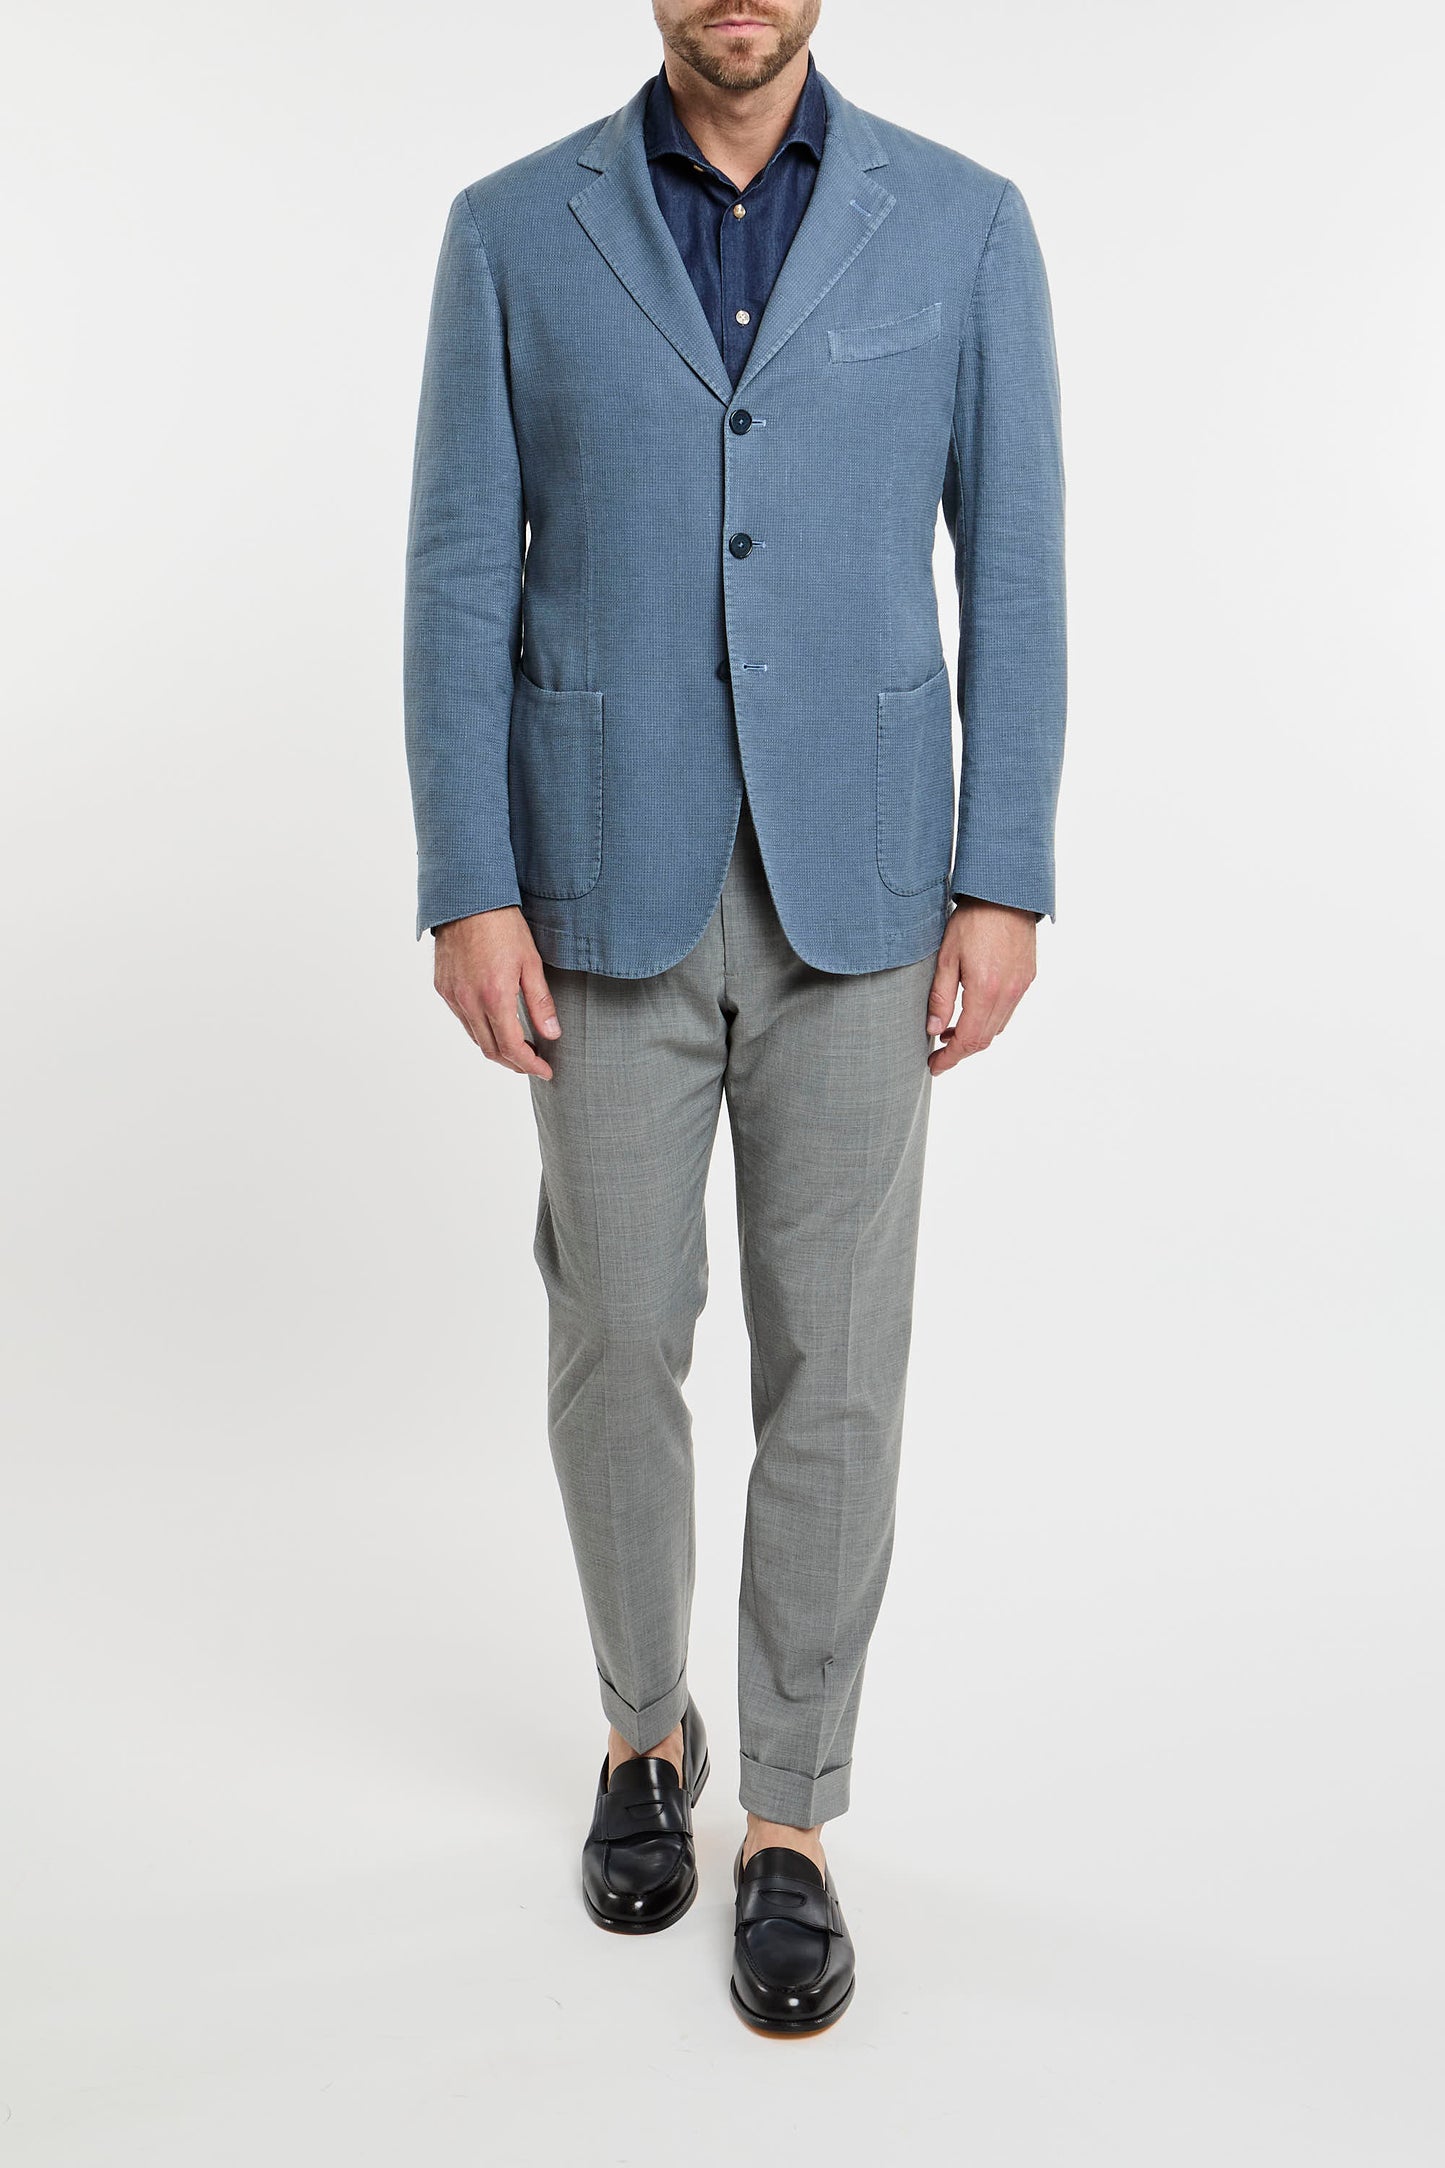  Santaniello Multicolor Jacket In Cotton/linen Blend Azzurro Uomo - 1